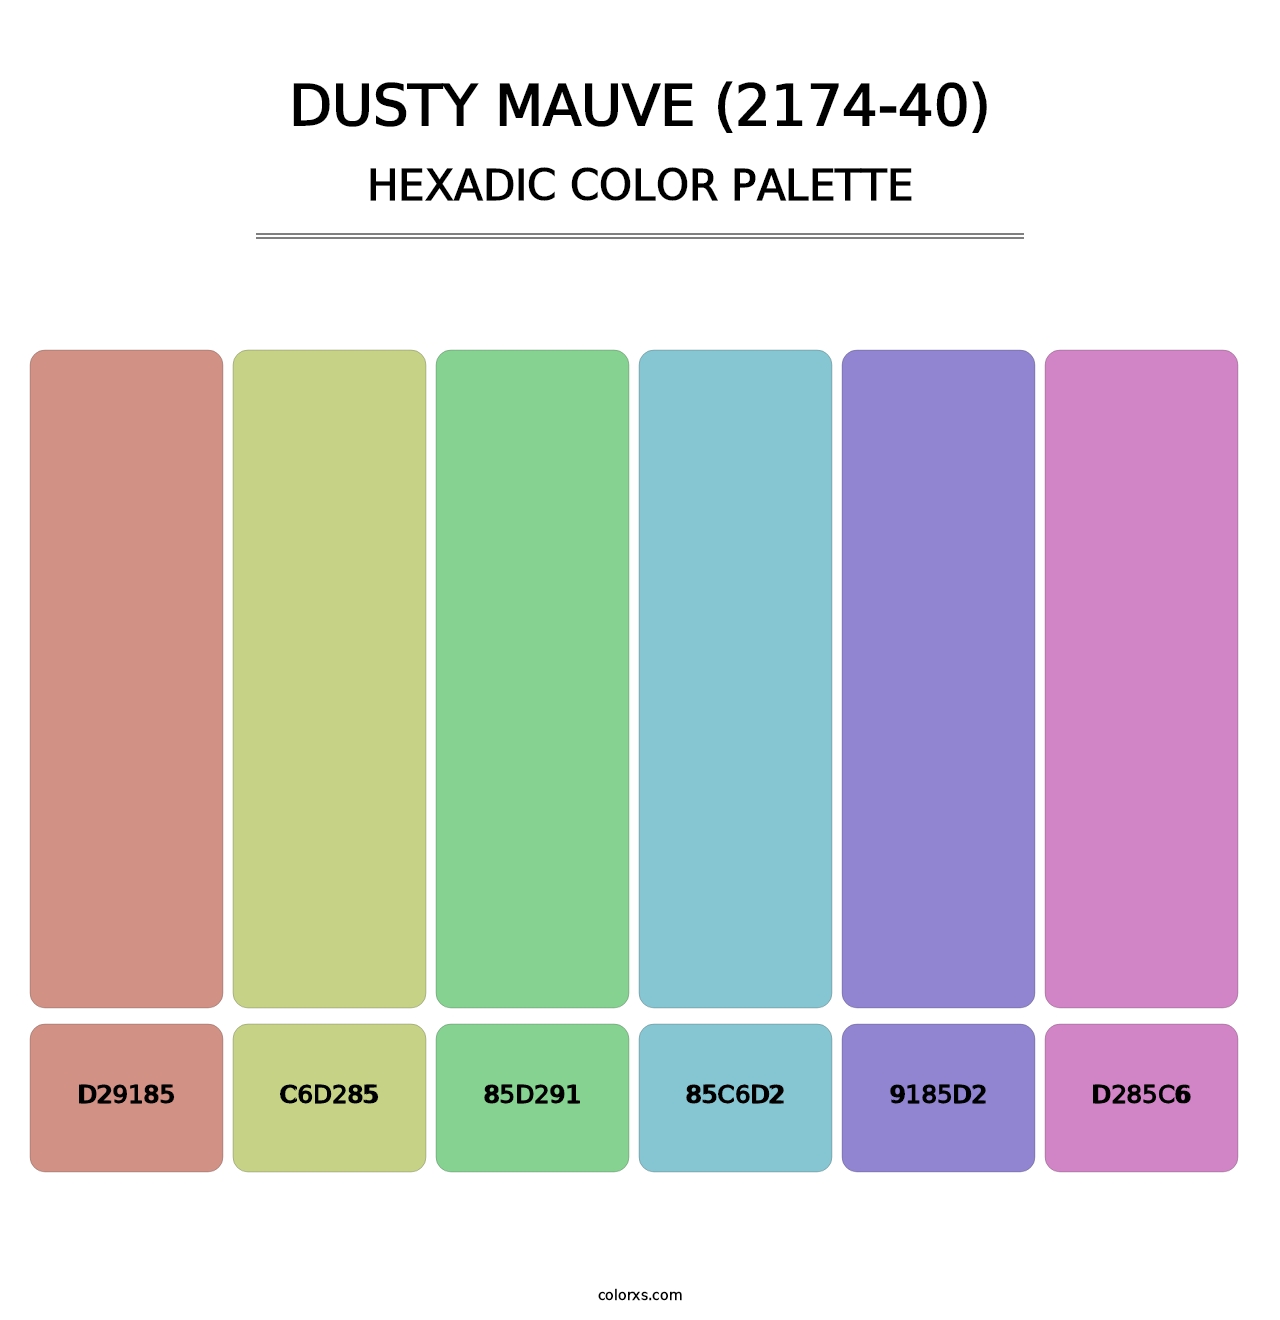 Dusty Mauve (2174-40) - Hexadic Color Palette